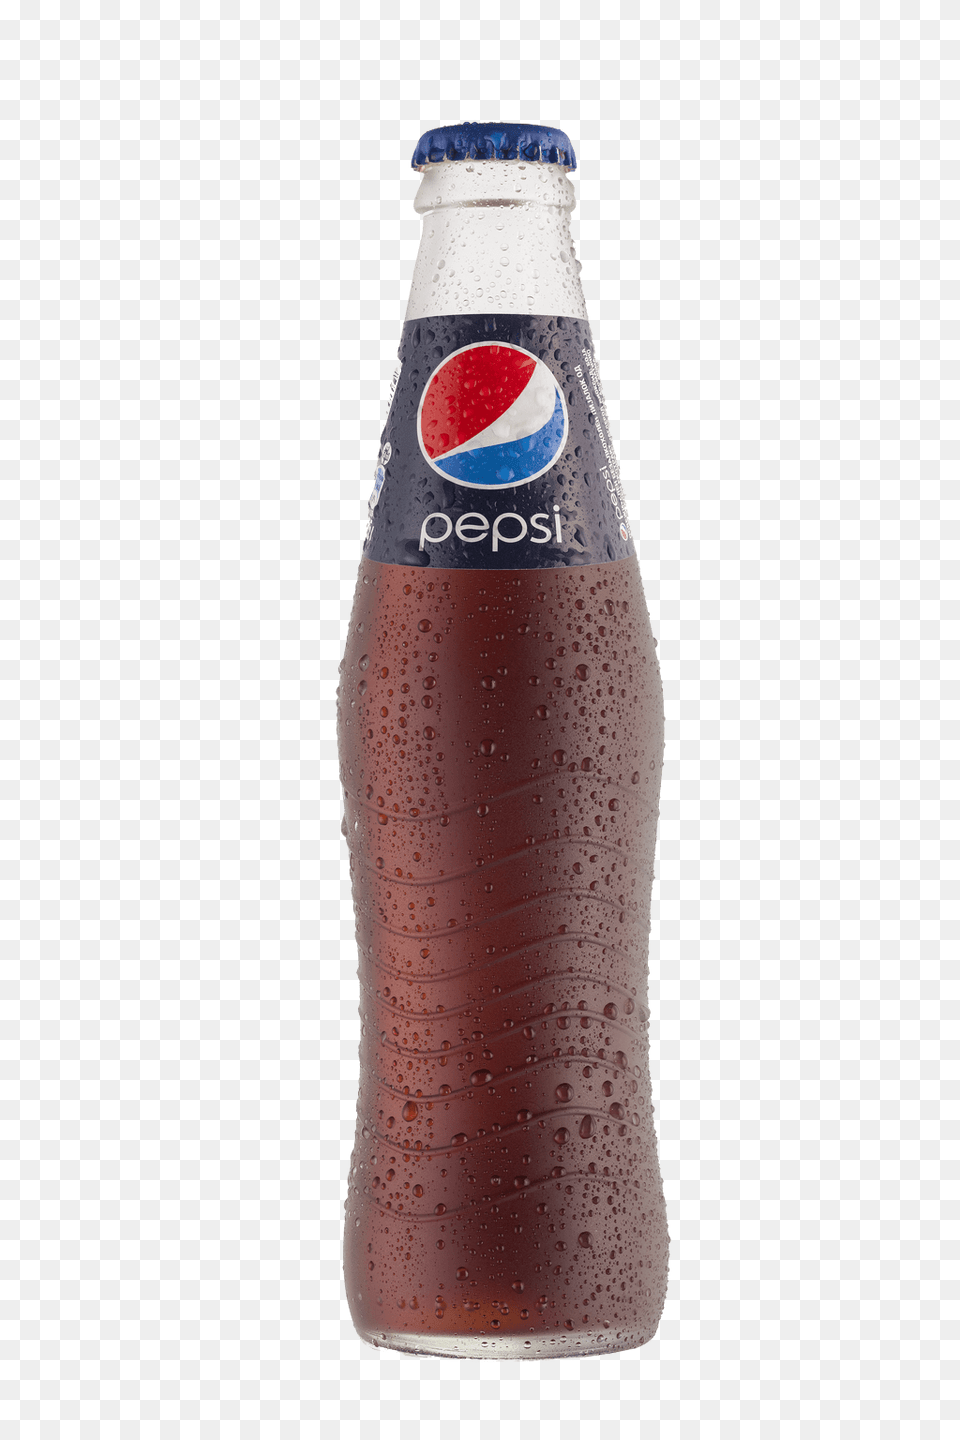 Glass Bottle Pepsi, Beverage, Alcohol, Beer, Soda Free Transparent Png